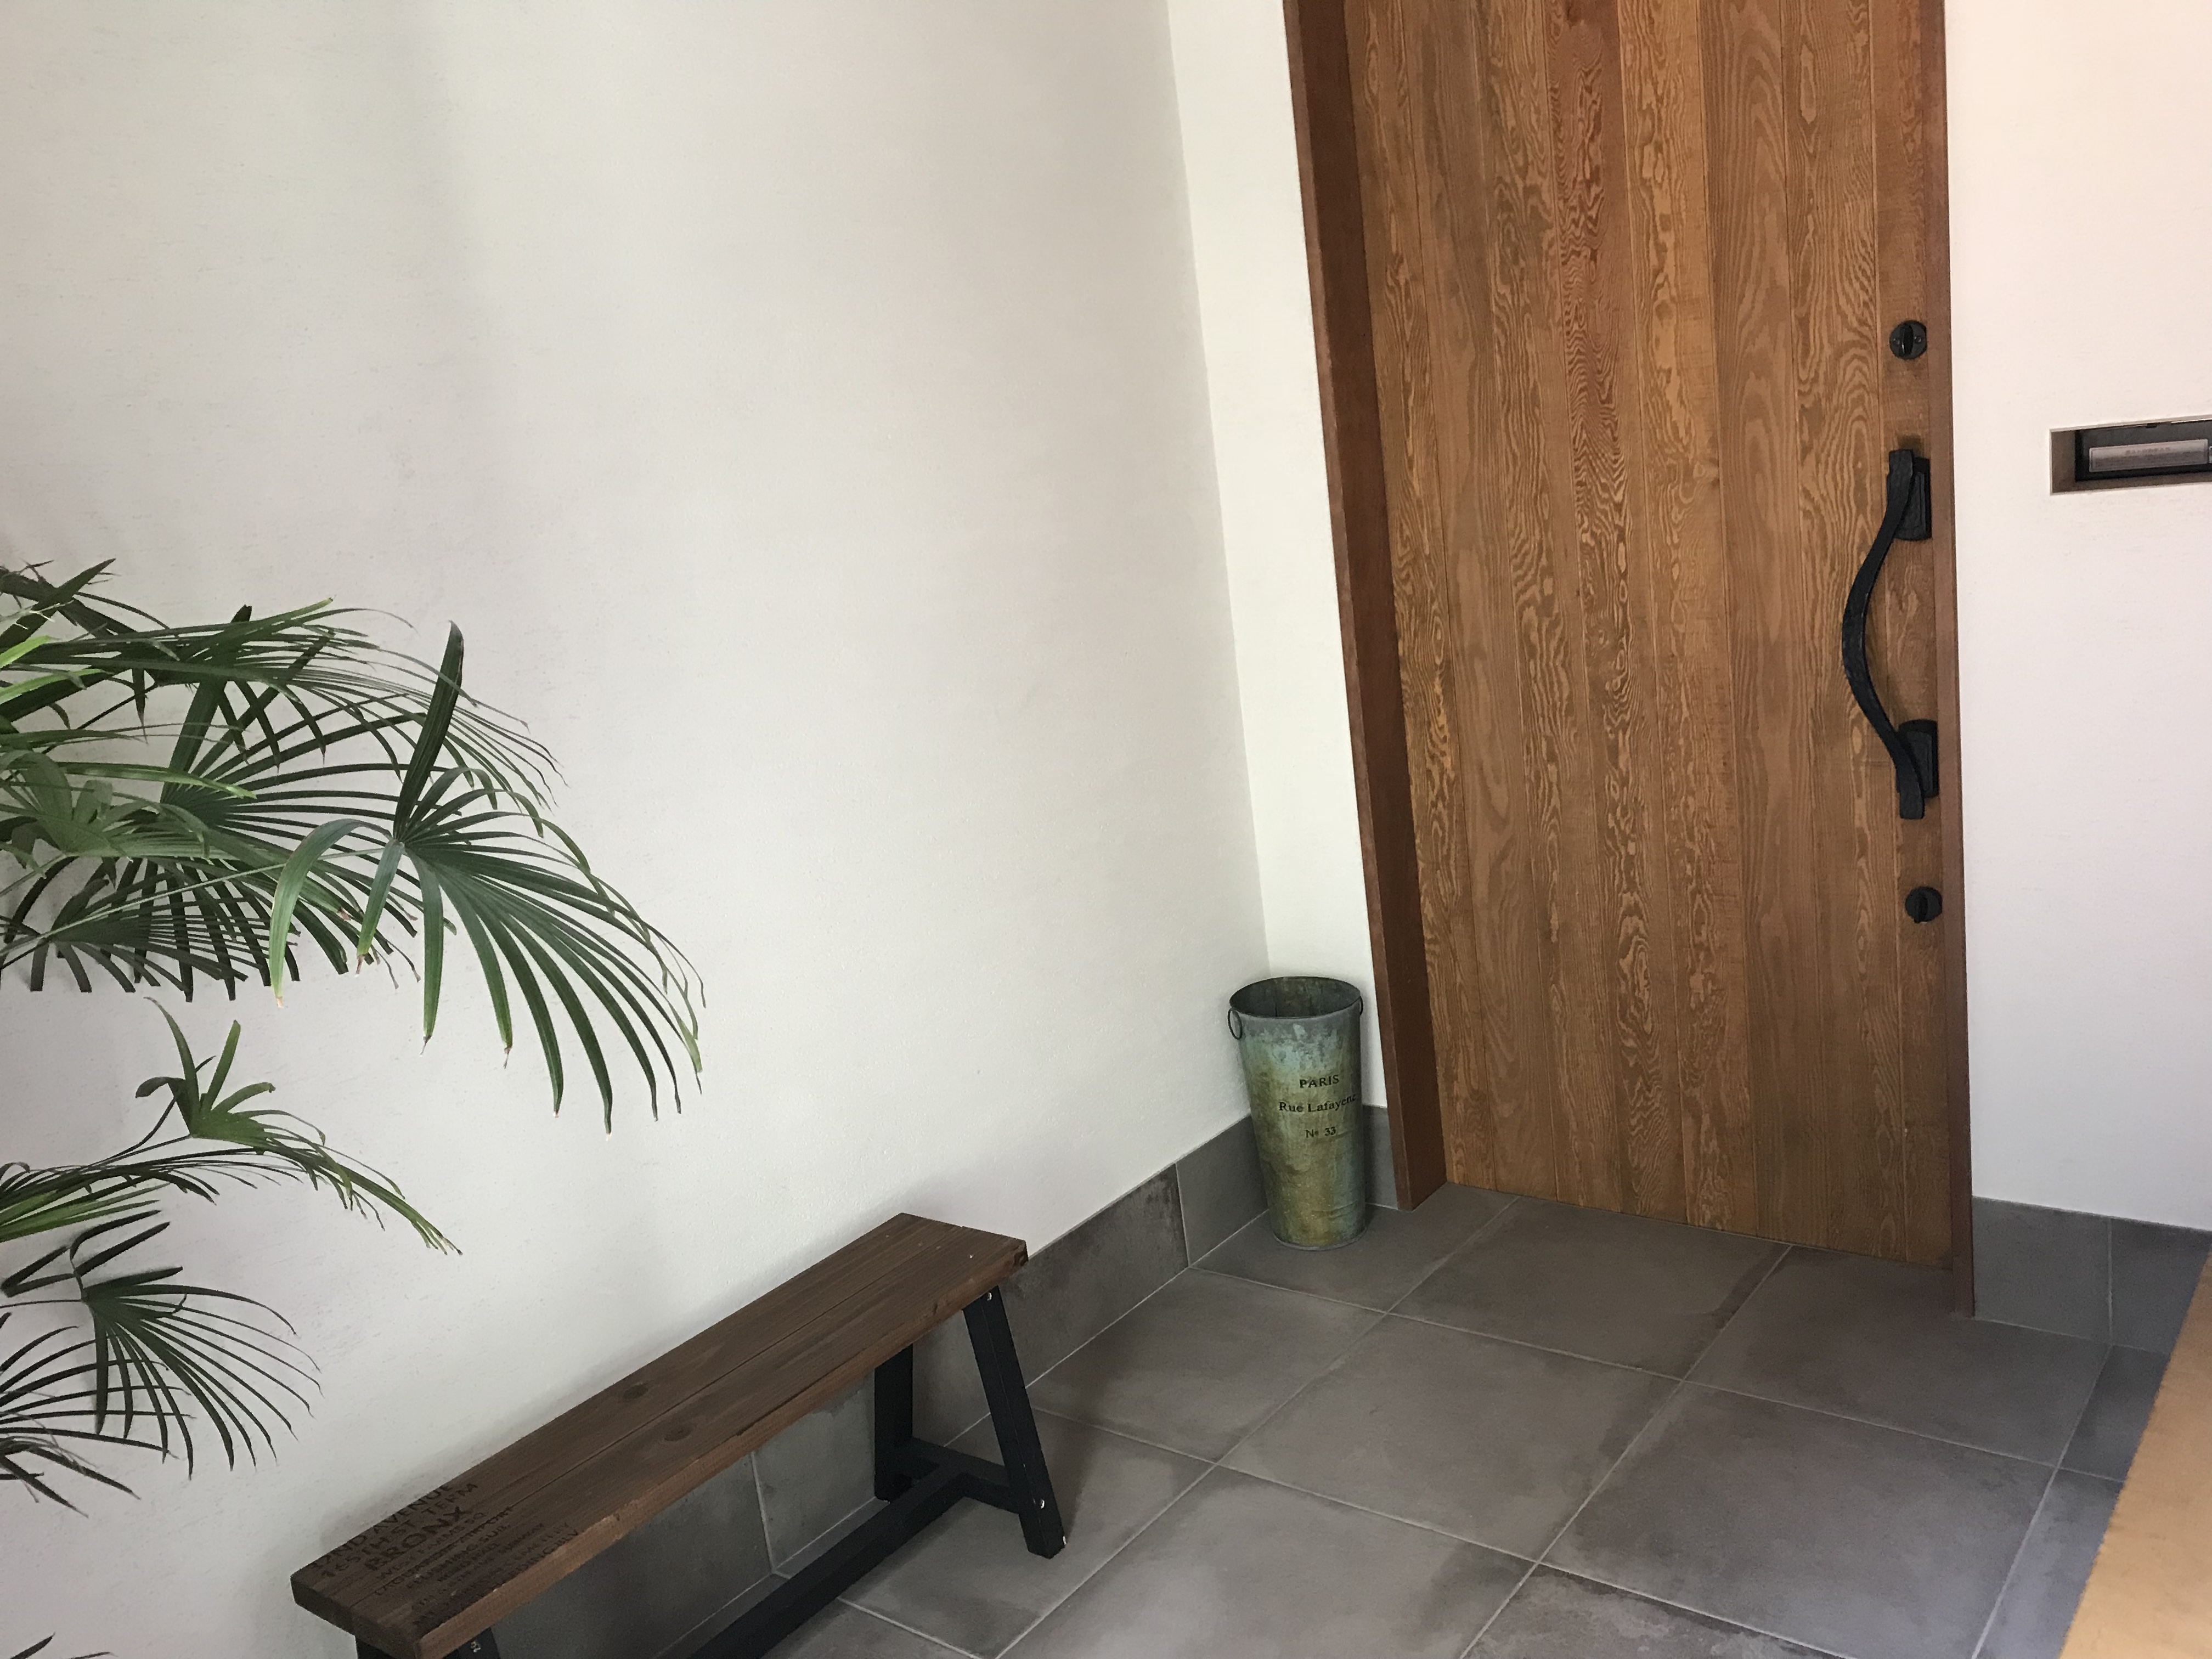 木製の玄関ドアのメリットとデメリットとは 金属製ドアとの違いは